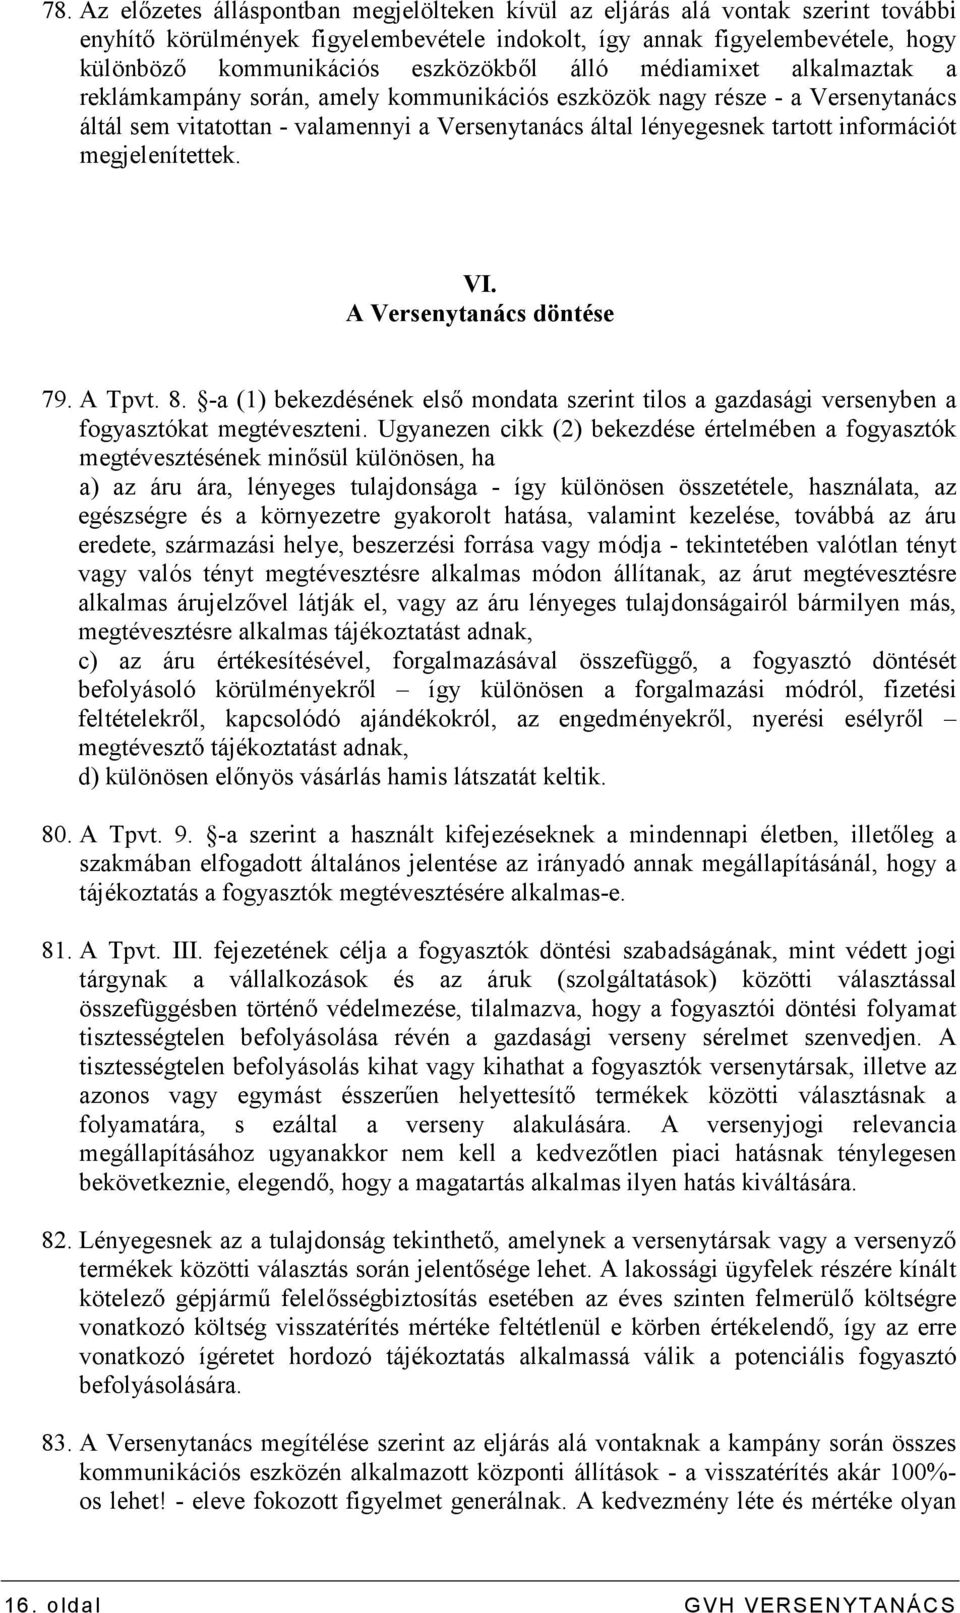 információt megjelenítettek. VI. A Versenytanács döntése 79. A Tpvt. 8. -a (1) bekezdésének elsı mondata szerint tilos a gazdasági versenyben a fogyasztókat megtéveszteni.